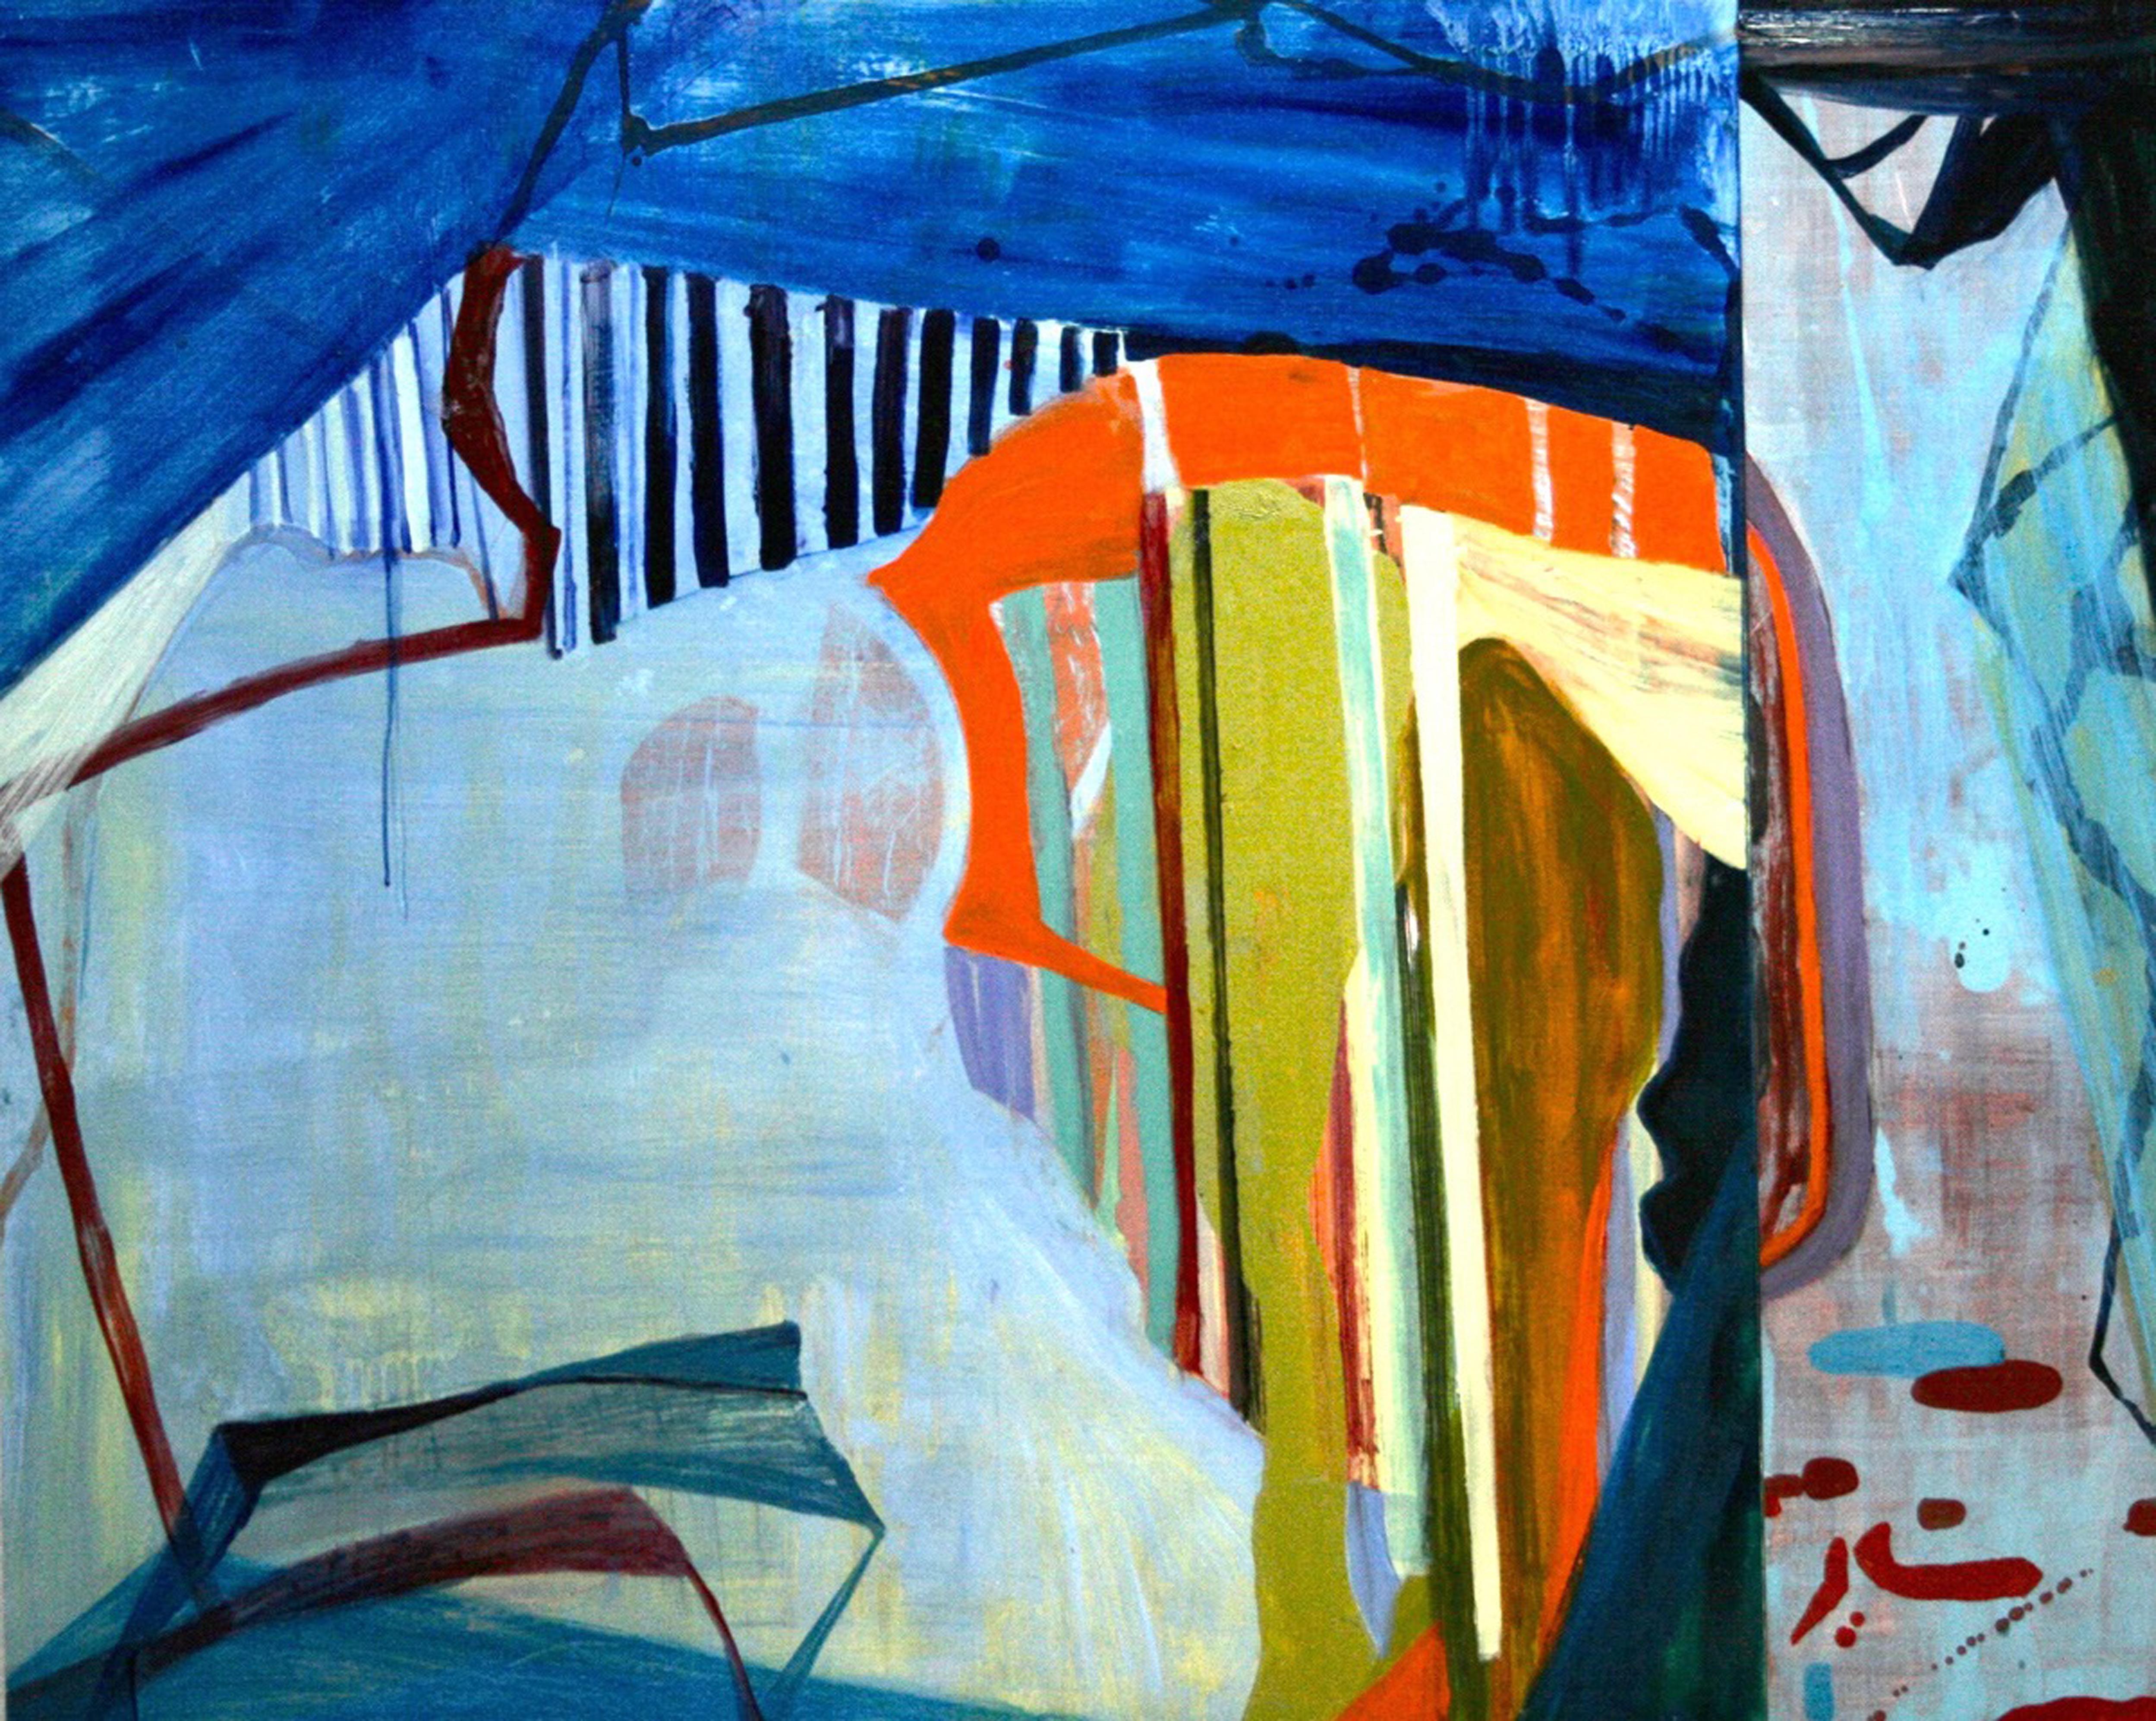 « Water's Edge » (Bord de mer)  Abstraction dans des tons de bleu, rouge, orange, chartreuse, noir - Painting de Susan Sharp